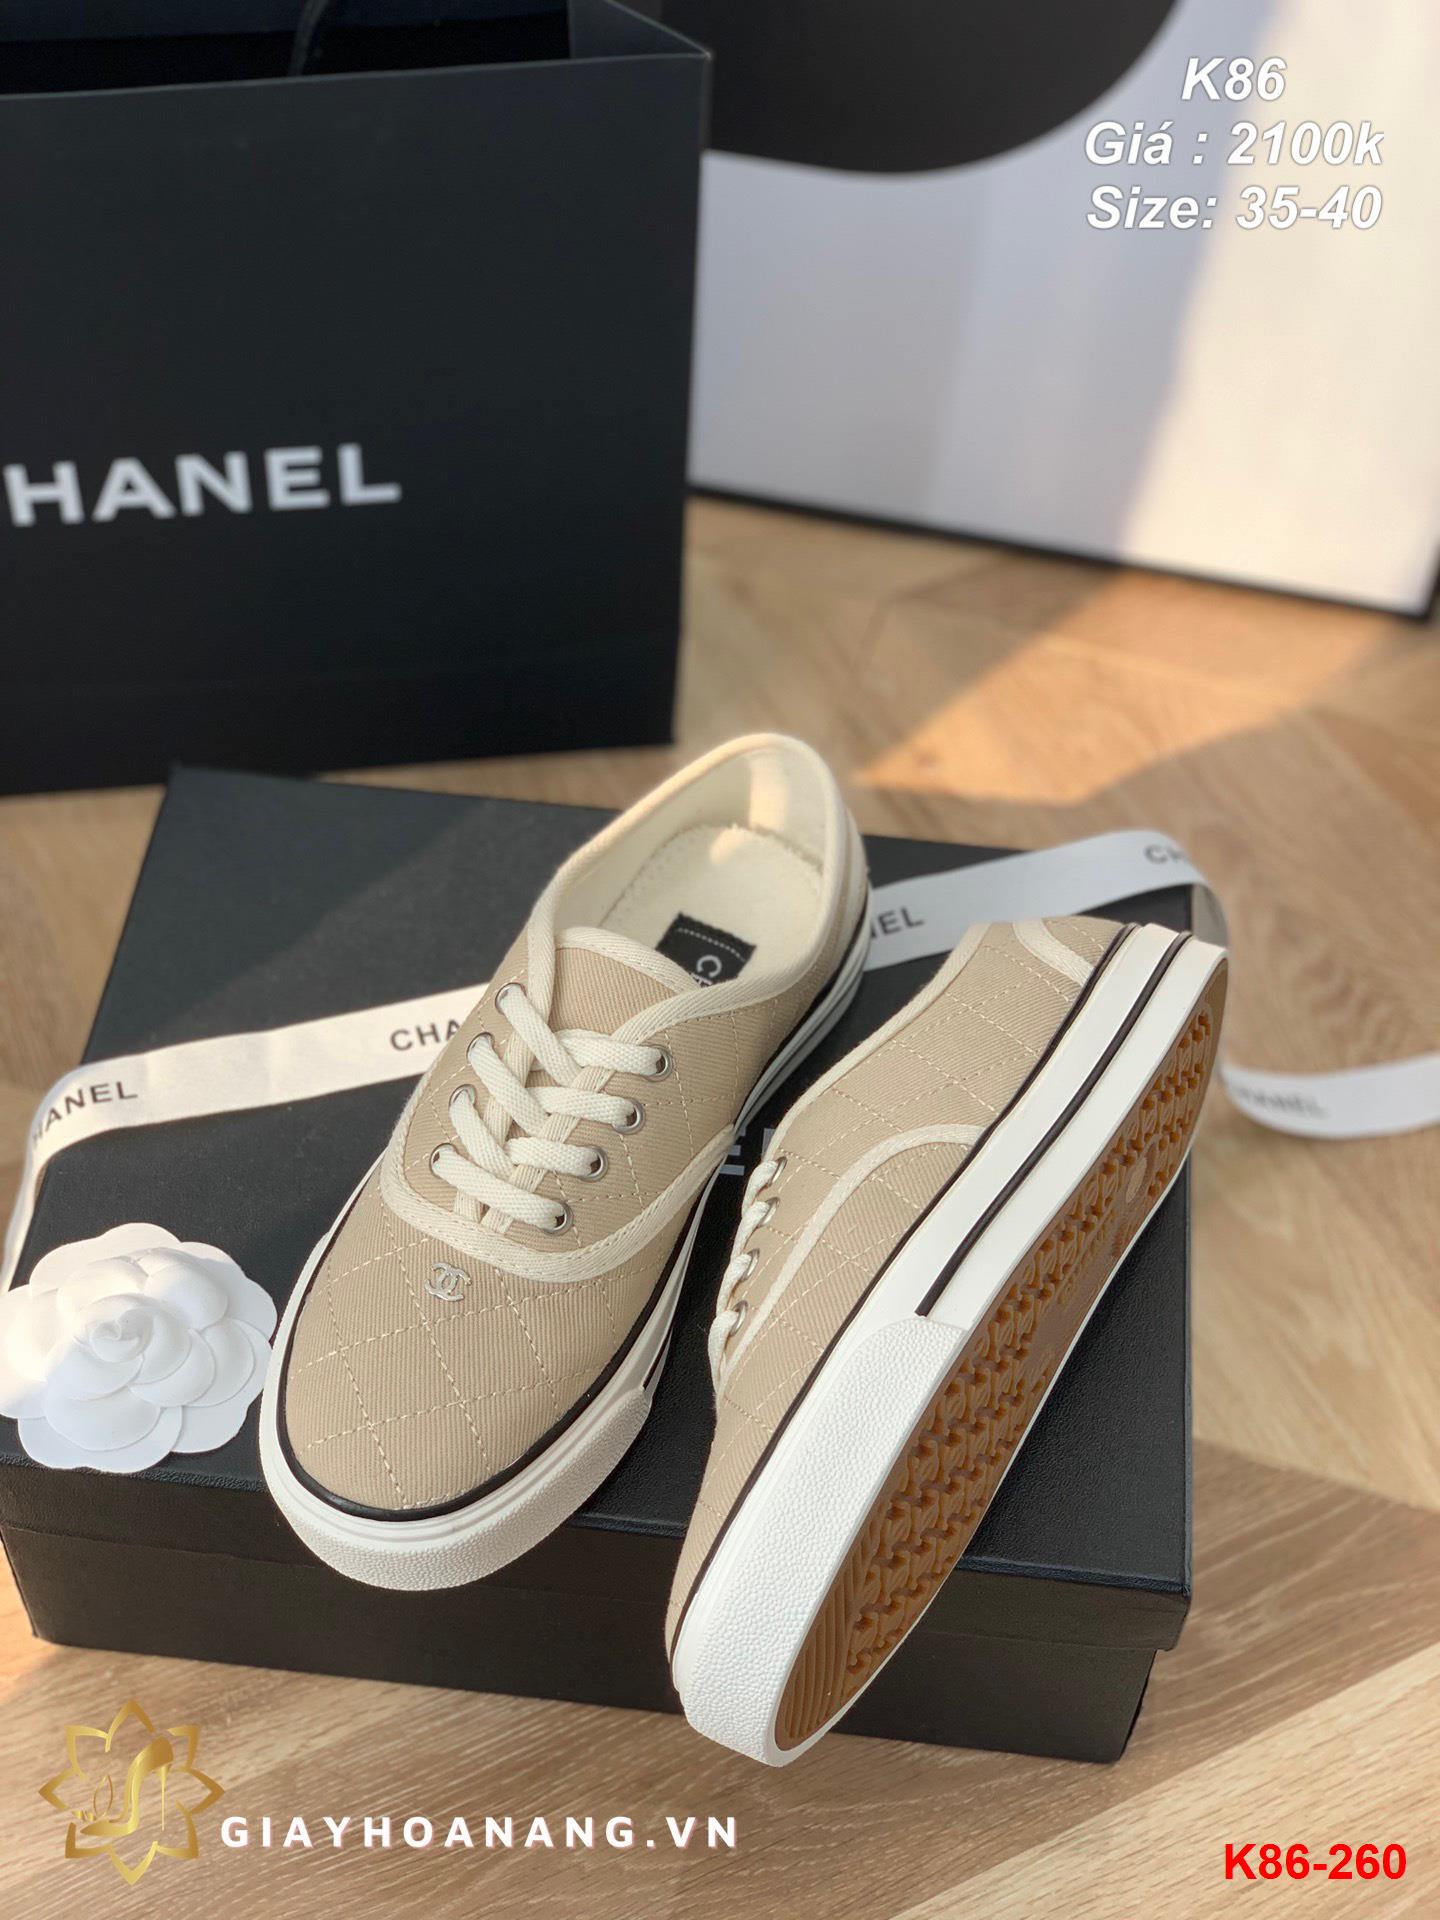 K86-260 Chanel giày thể thao siêu cấp